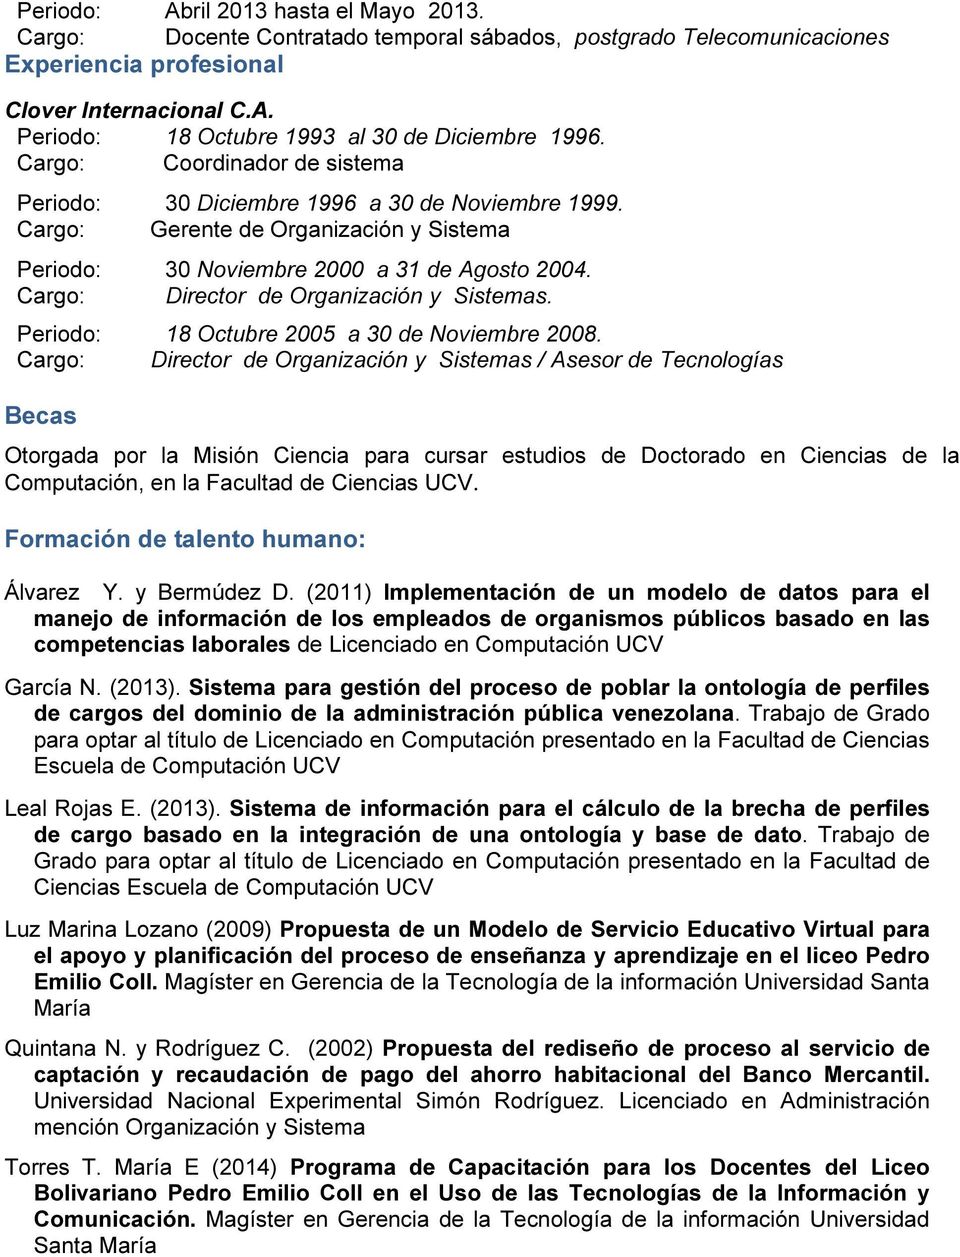 Cargo: Director de Organización y Sistemas. Periodo: 18 Octubre 2005 a 30 de Noviembre 2008.